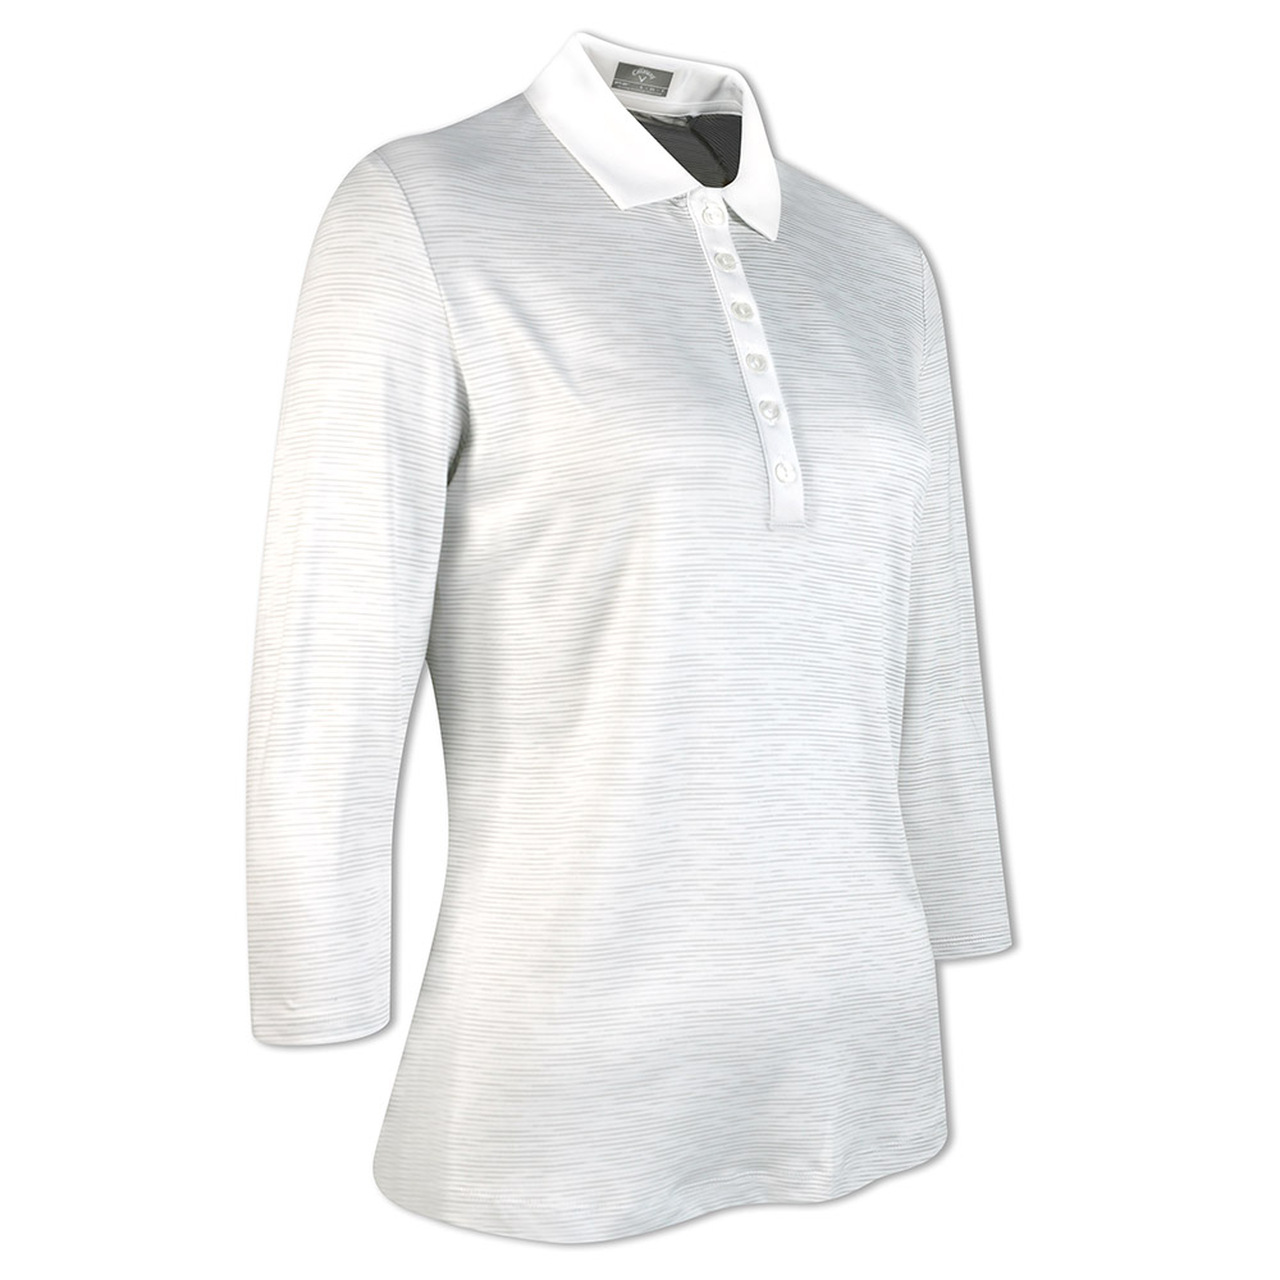 Callaway Space Dye Jersey dámské triko s 3/4 rukávem, bílé, vel. L